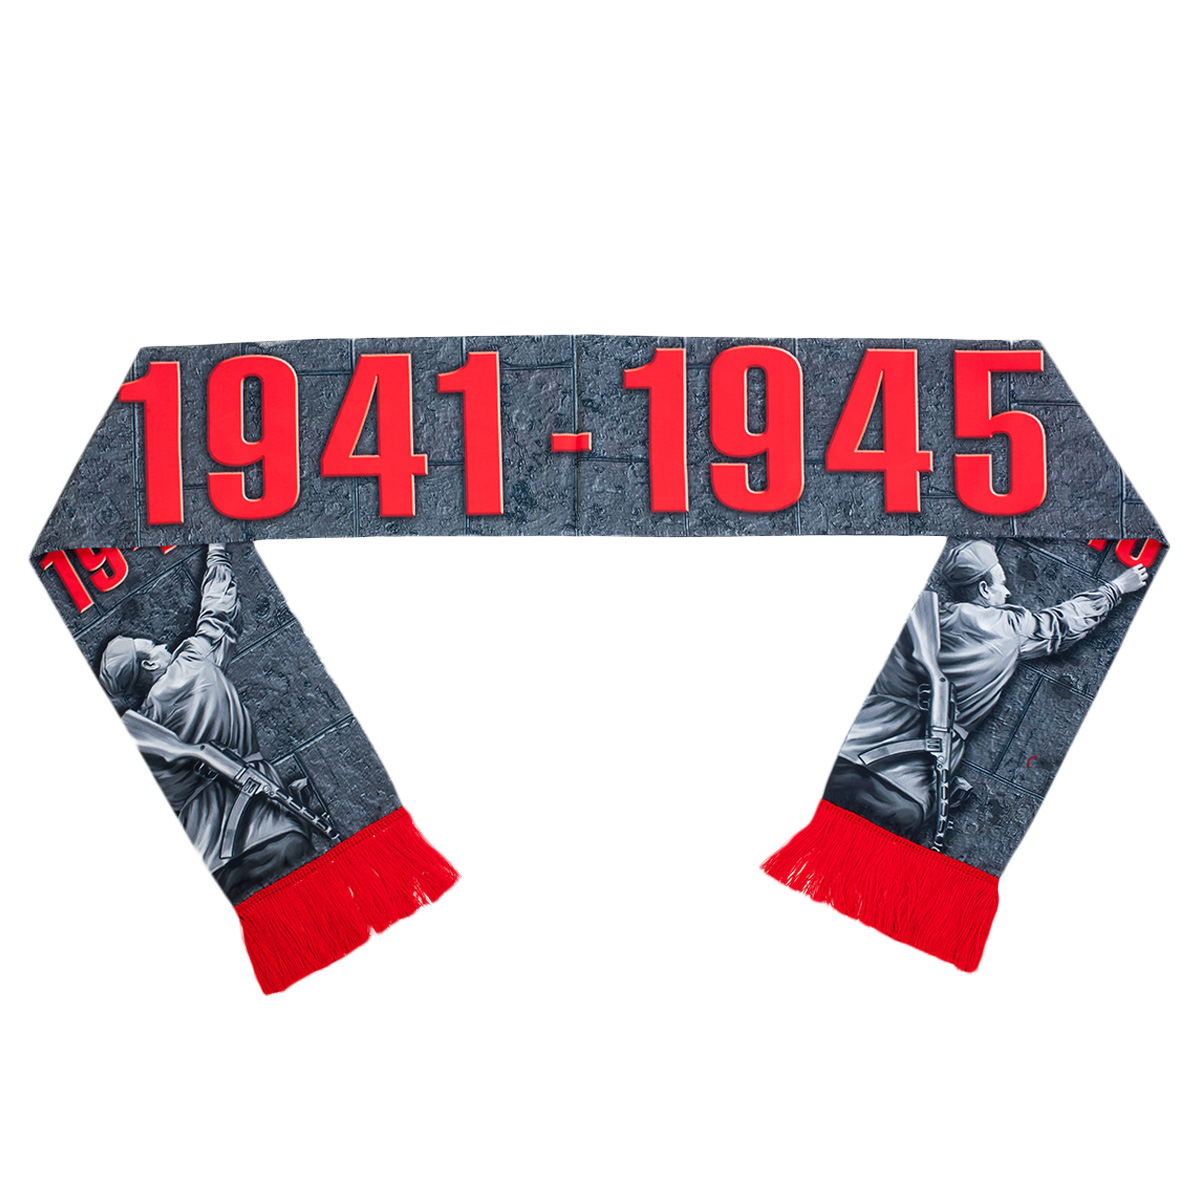 Стильный шелковый шарф "Победа 1941-1945" 